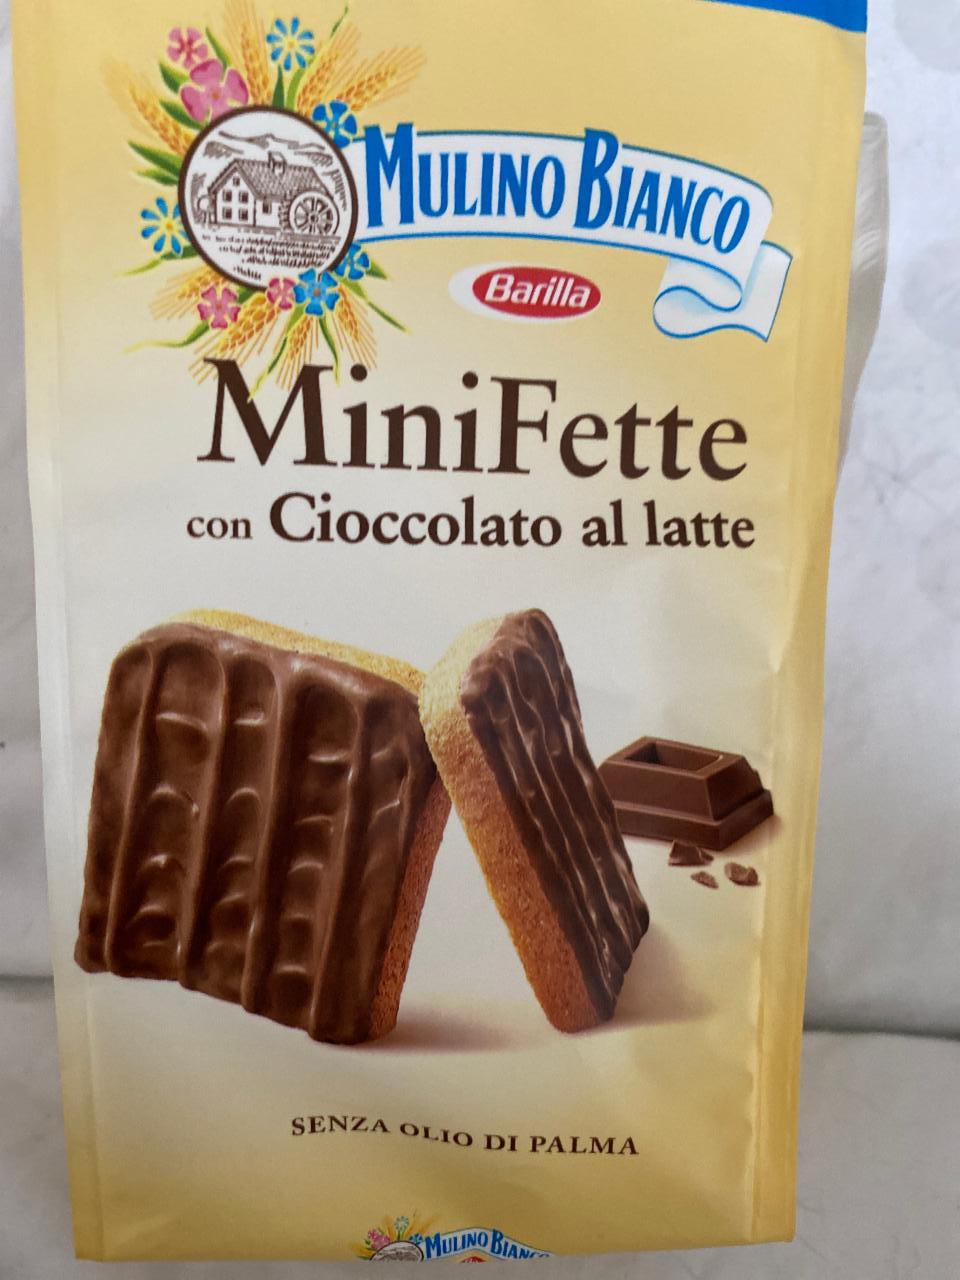 Fotografie - MiniFette con Cioccolato al latte Mulino Bianco